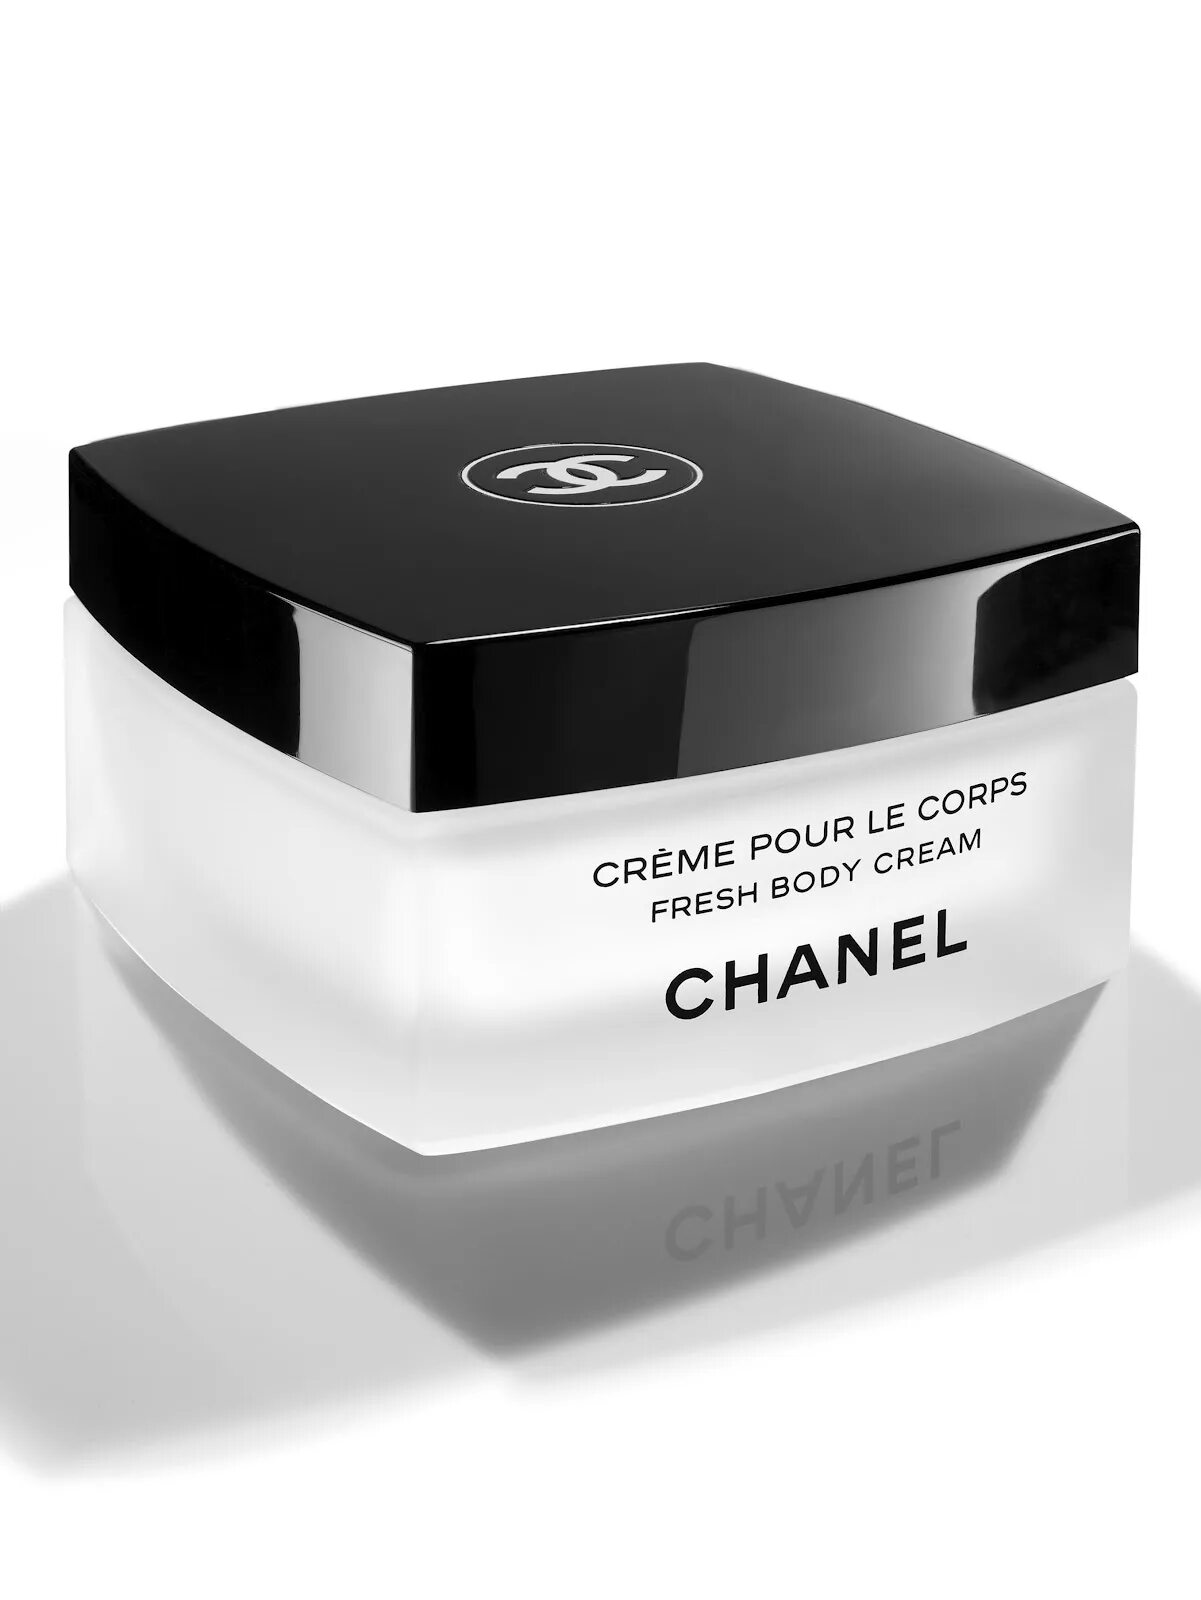 Крема chanel купить. Крем Шанель Creme pour le Corps. Крем Chanel body. Крем Коко Шанель для лица. Крем фрэш для тела Шанель 150.